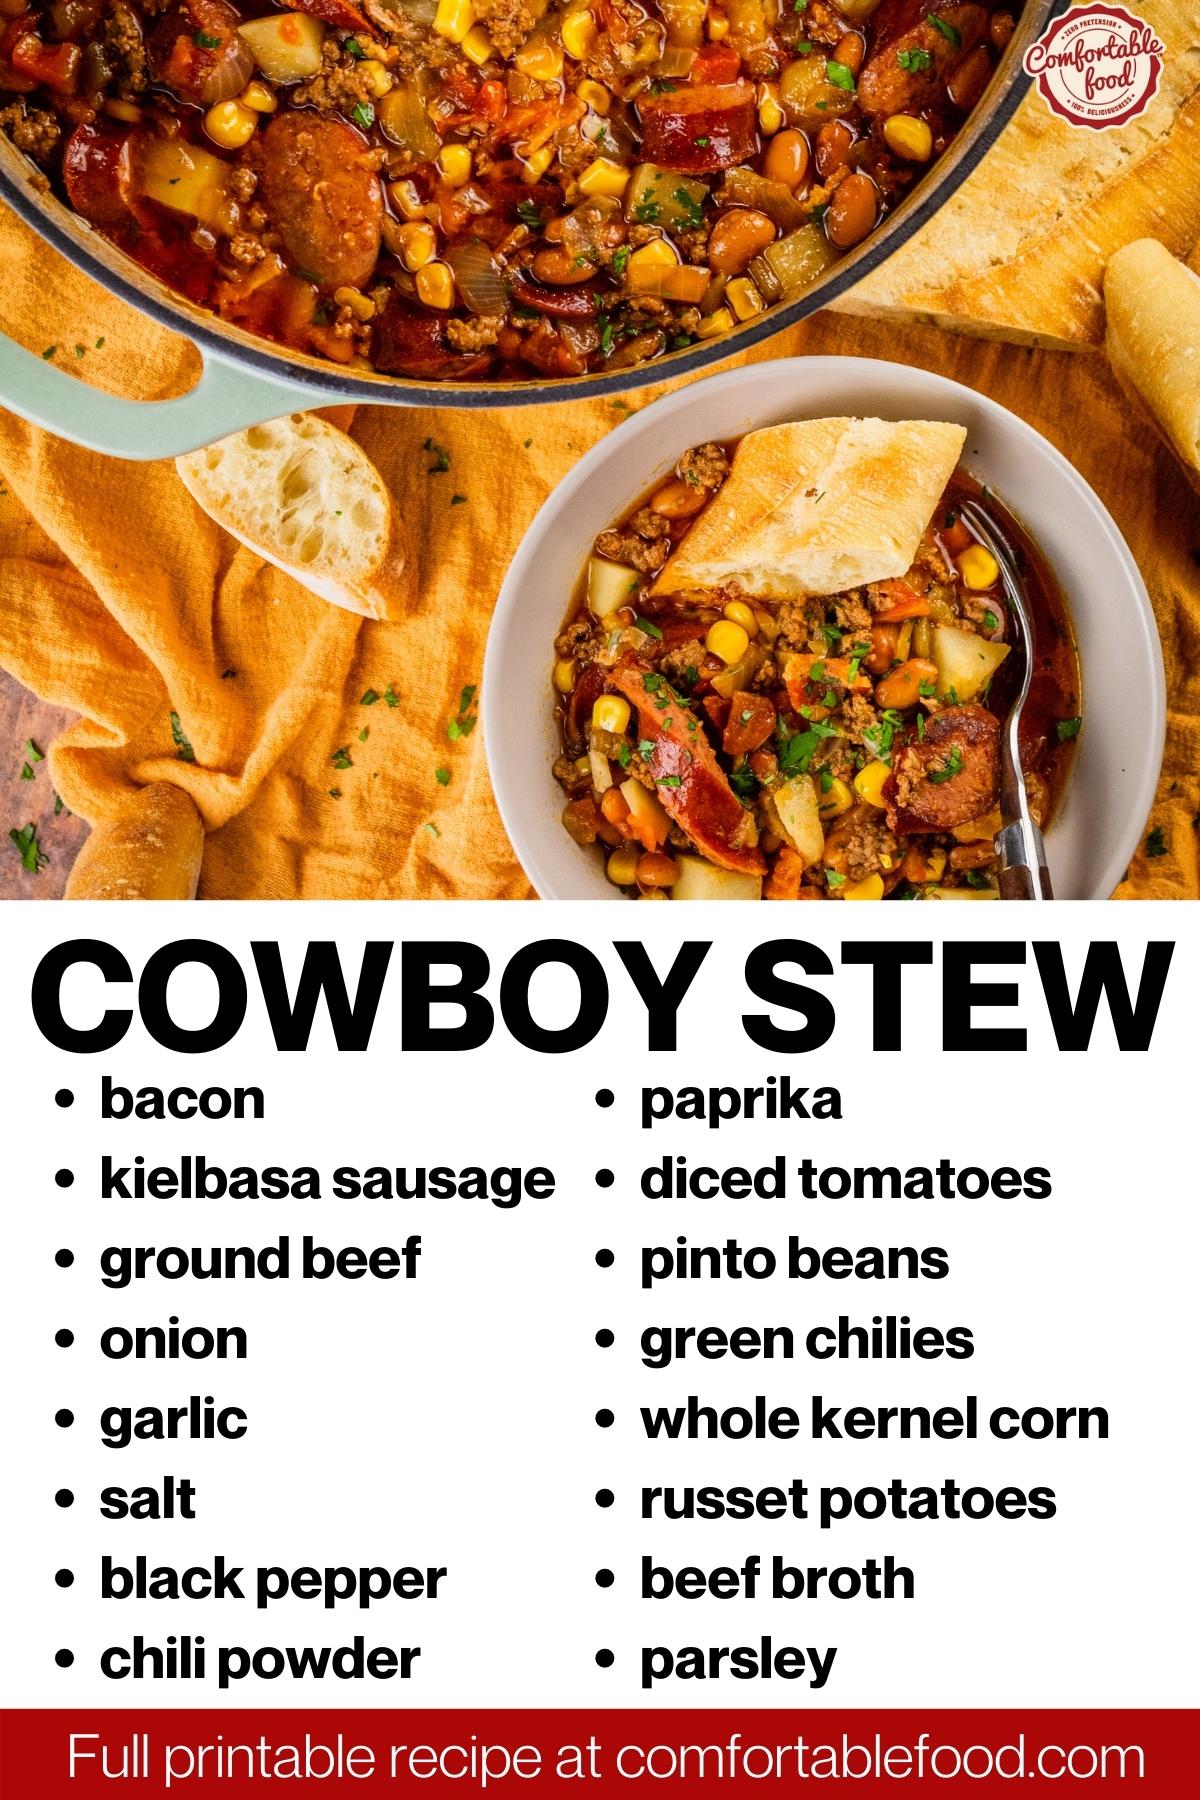 Cowboy stew socials